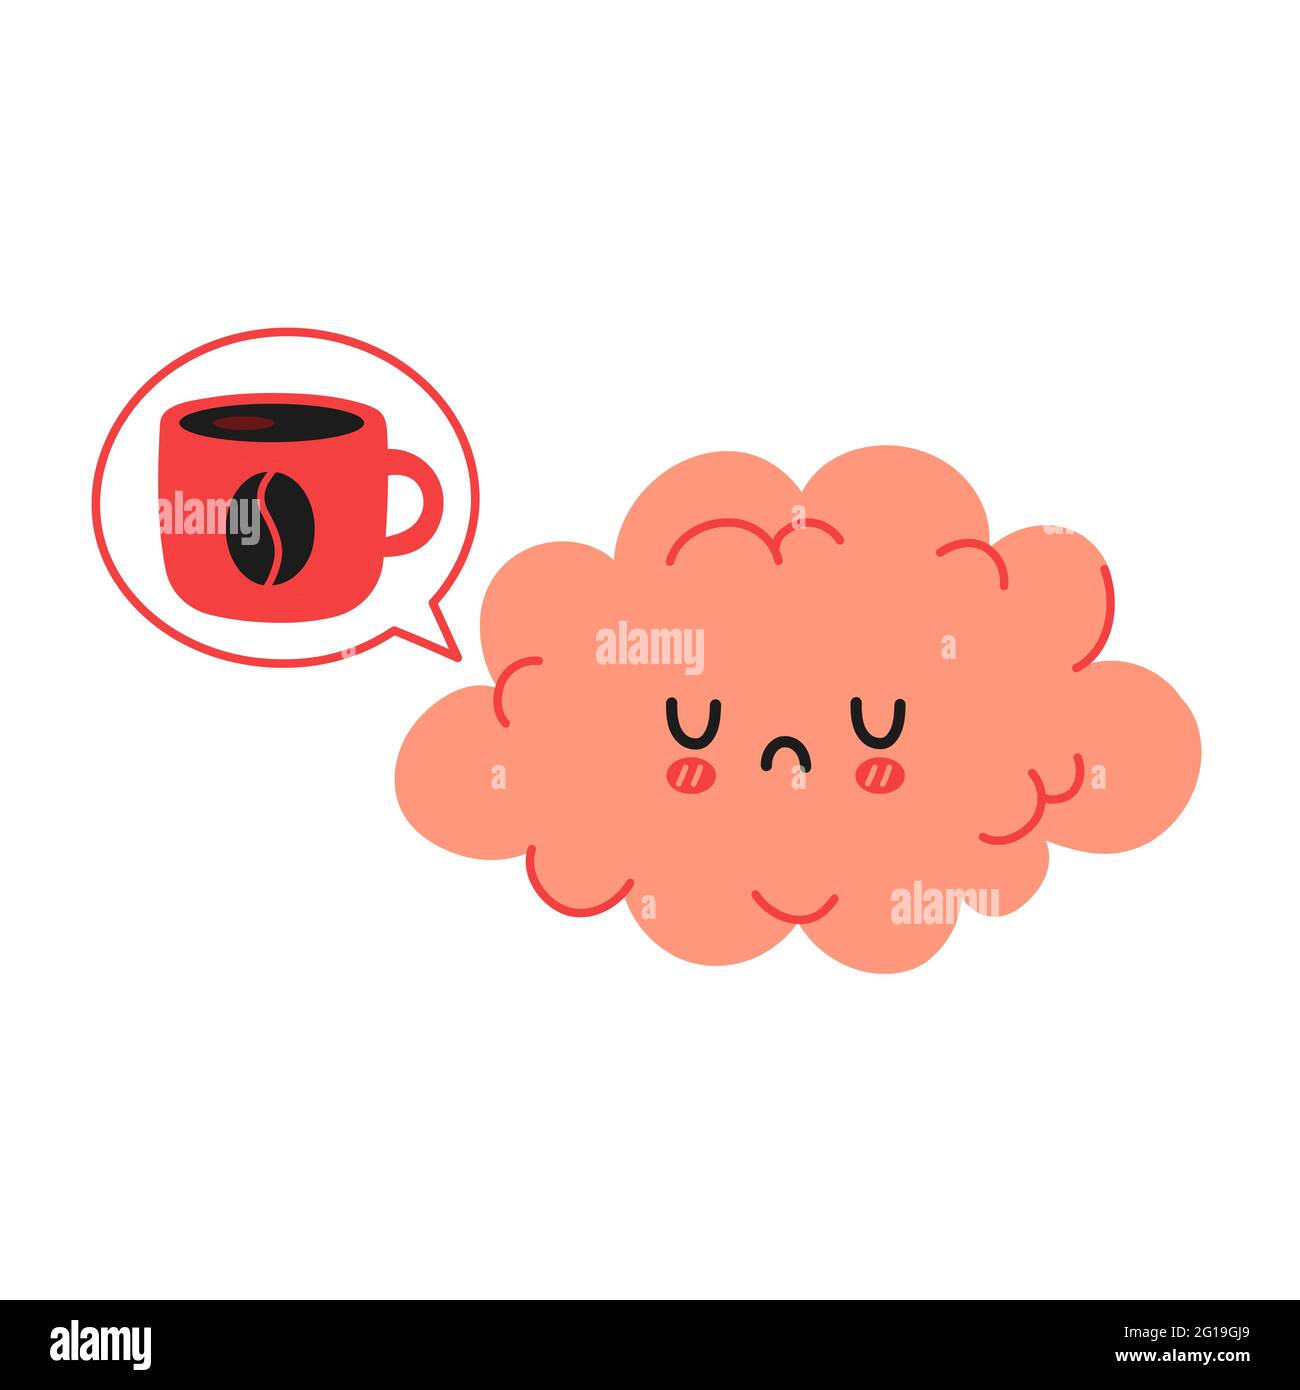 Nette lustige traurig Gehirn wollen Kaffee. Vektor Hand gezeichnet Cartoon kawaii Charakter Illustration Symbol. Isoliert auf weißem Hintergrund. Kaffee oder Tee Tasse, Tasse, Gehirn Organ Charakter Konzept Stock Vektor